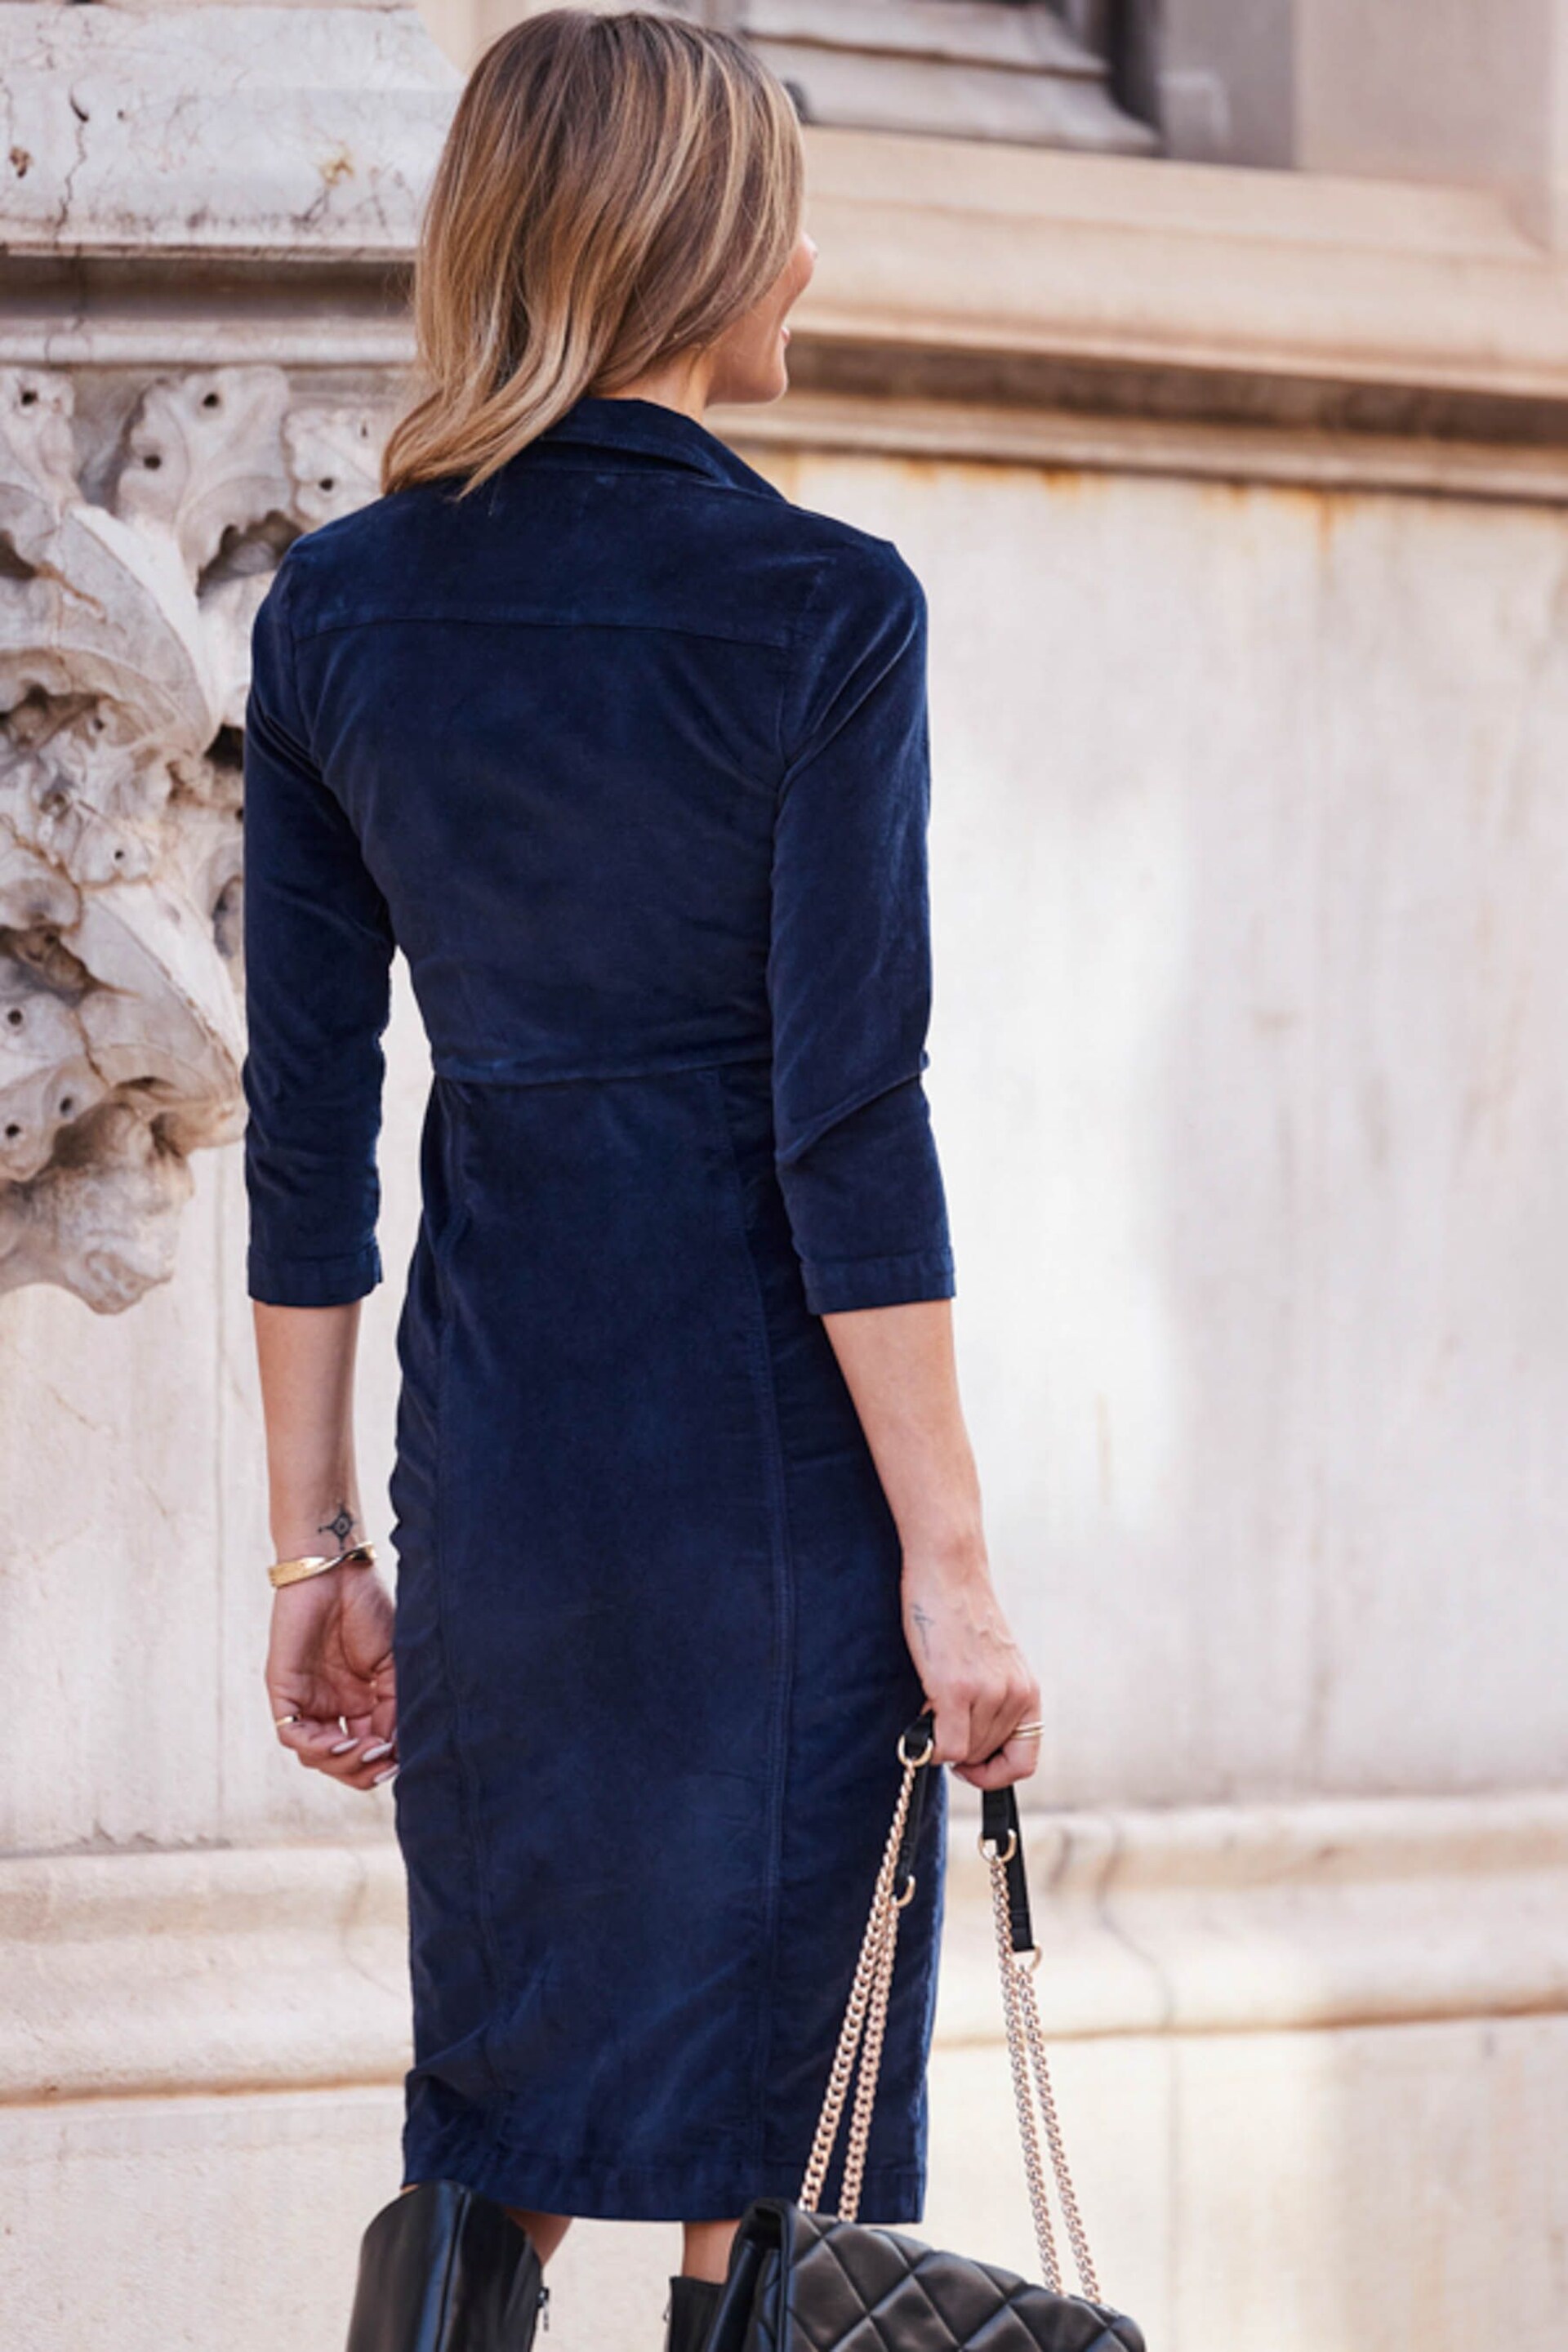 Sosandar Blue 3/4 Length Sleeve Velvet Pencil Dress - Image 2 of 3